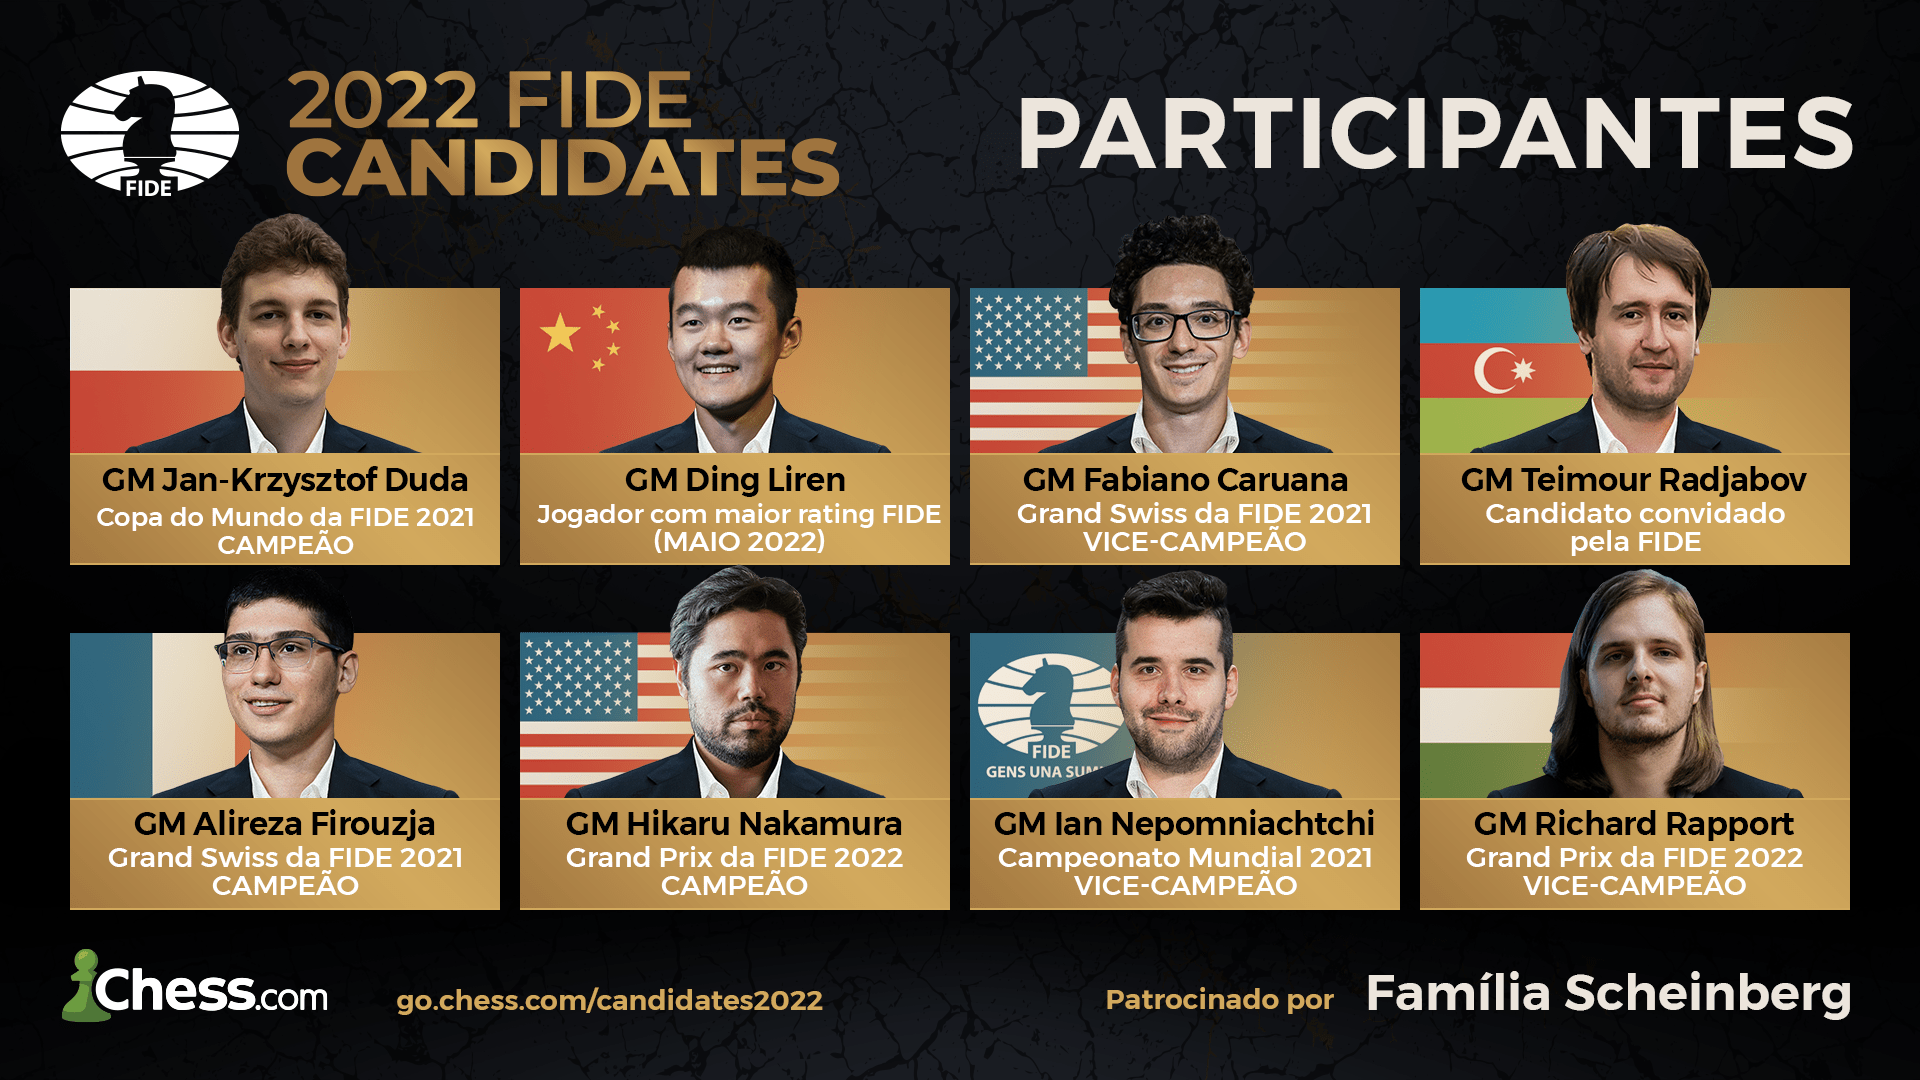 Torneio de Candidatos da FIDE 2022: informações completas 